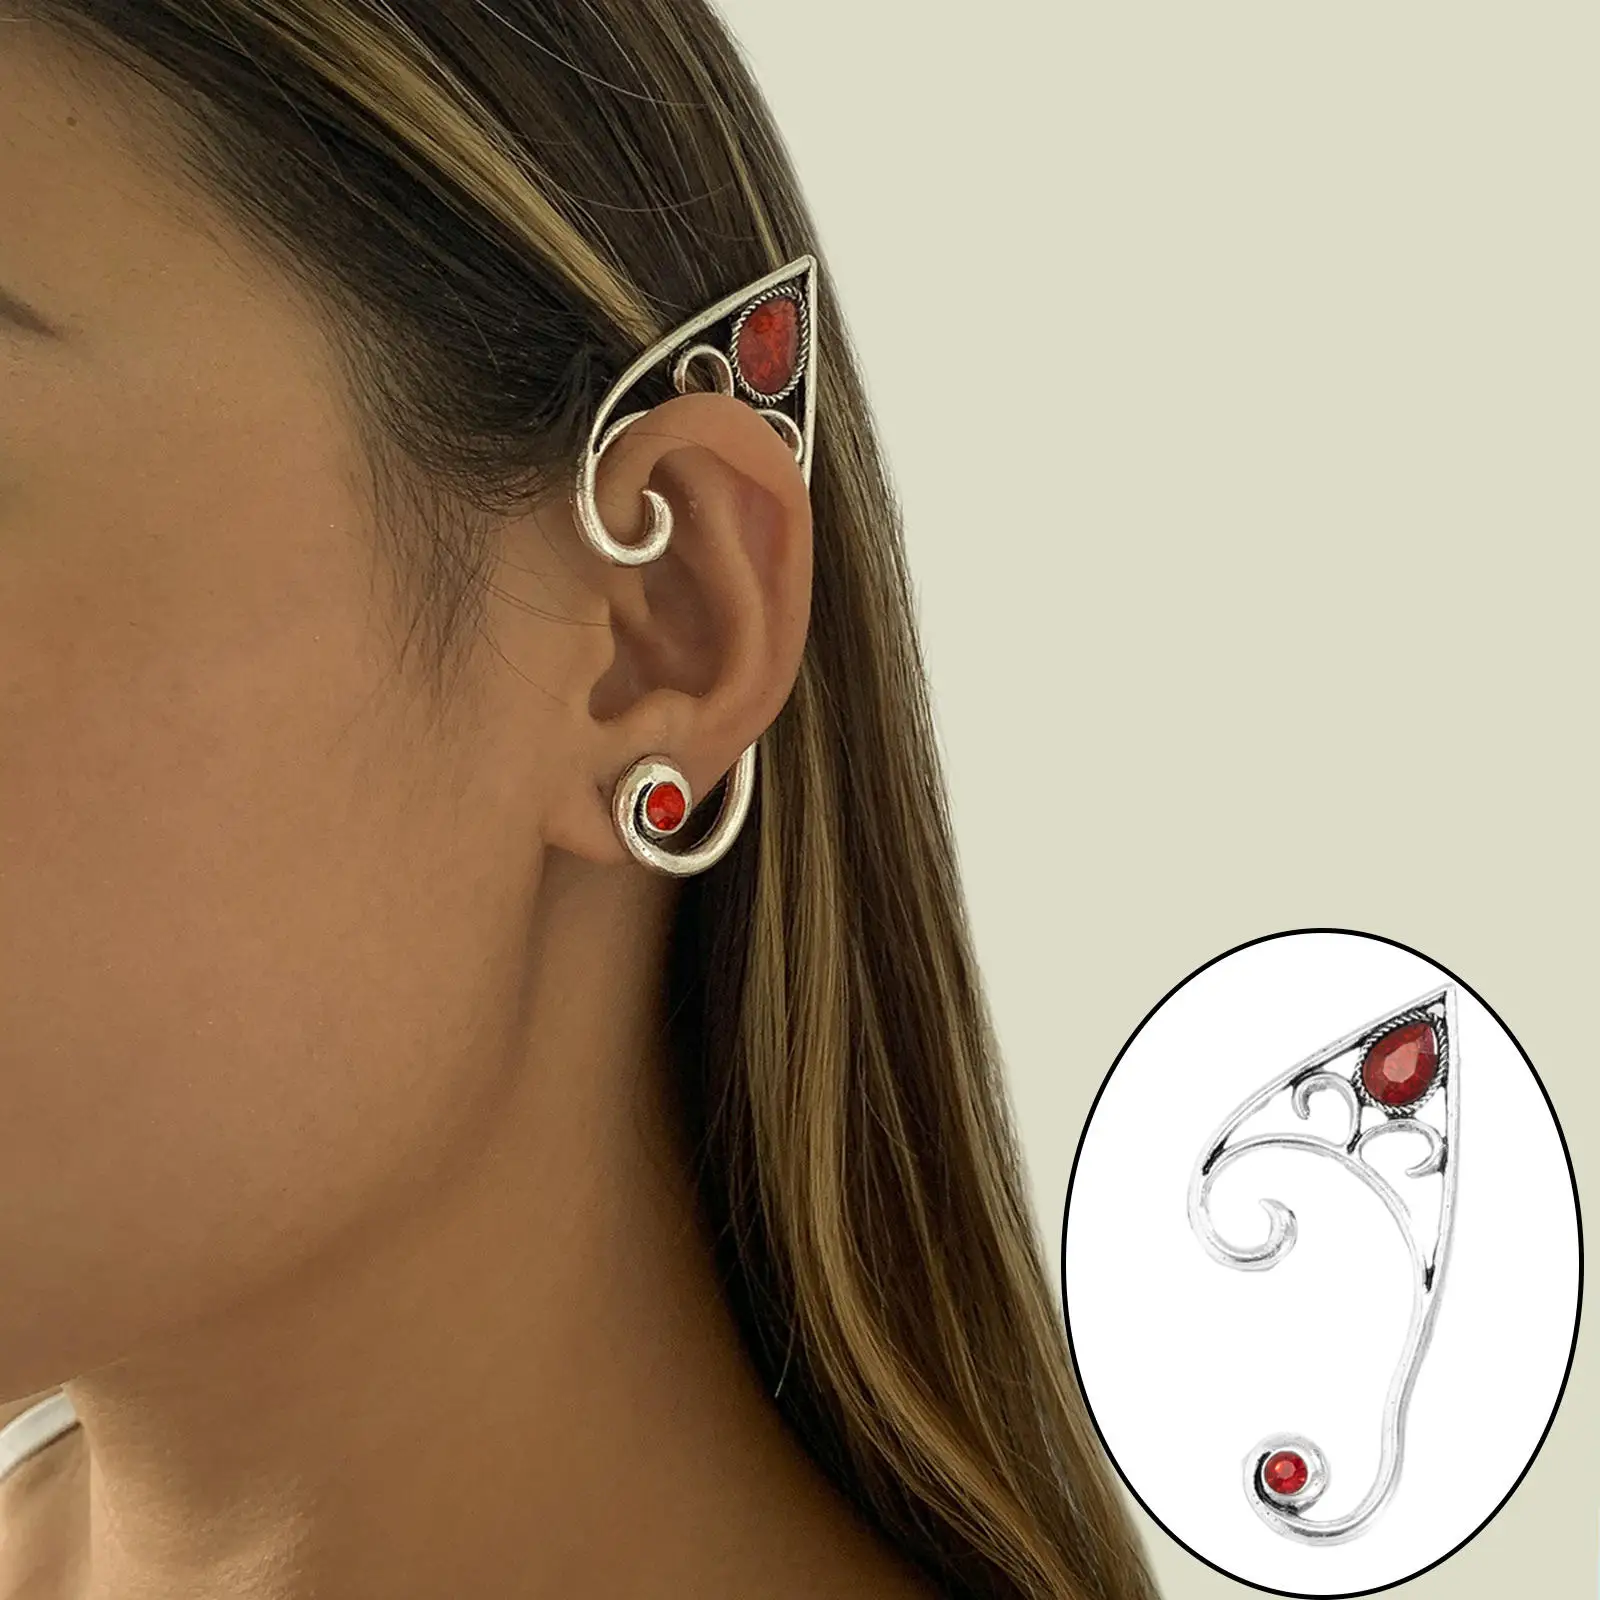 Fashionable Ear Cuff Ear Clip, Earring Clip on Ear Clip Ear Wrap Jewelry for Women Girls